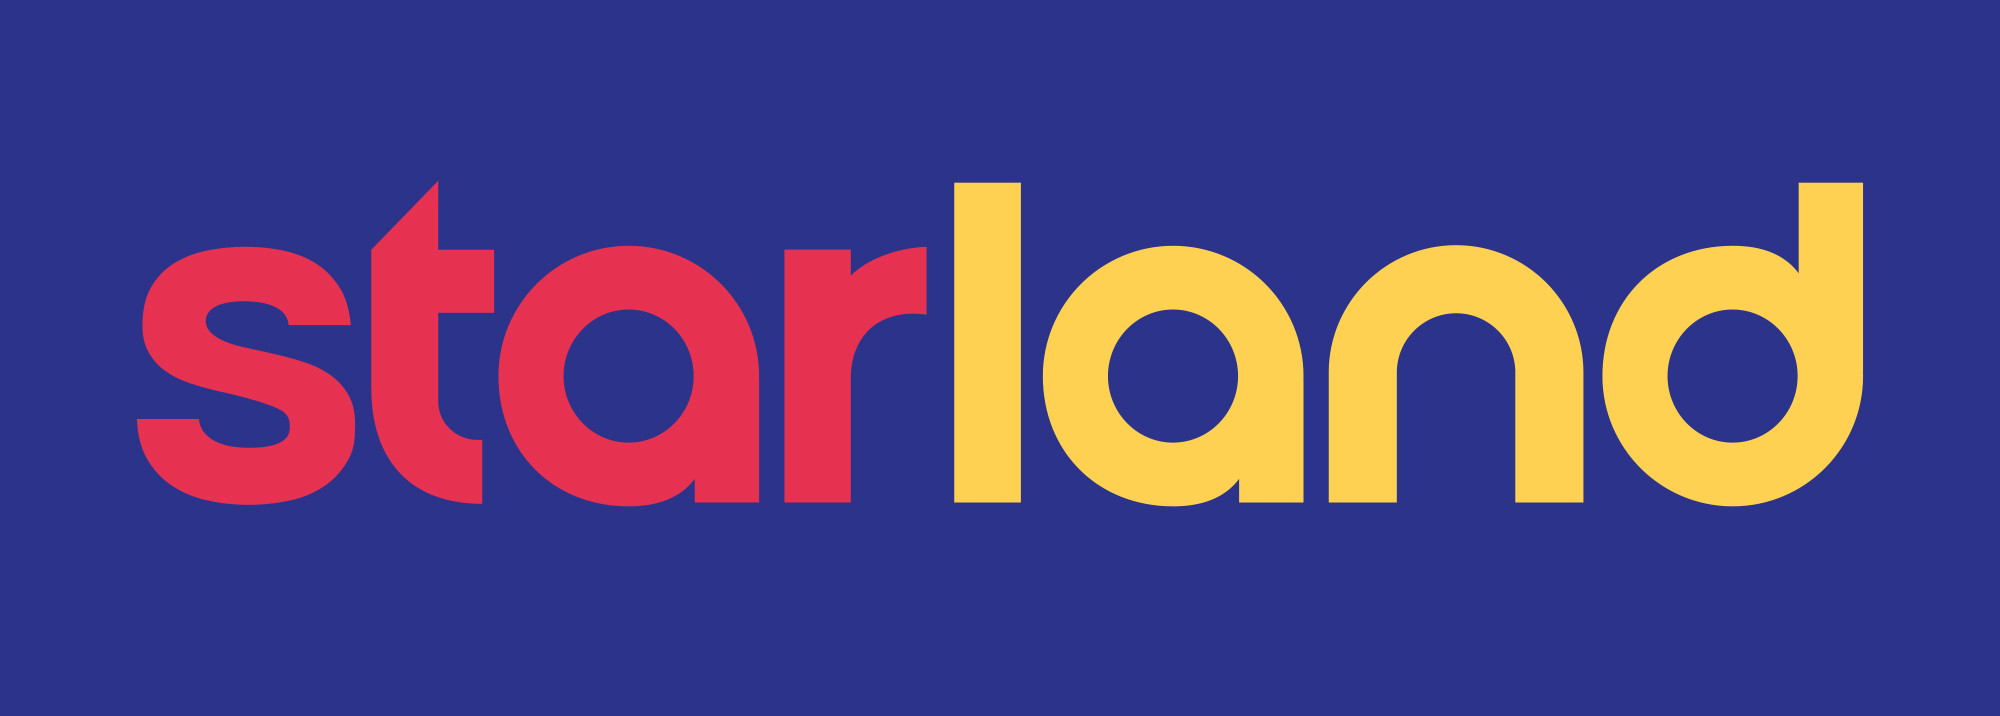 Η Starland καλωσορίζει νέους ήρωες στην πολύχρωμη παρέα της - Πρεμιέρα Σάββατο 9 Σεπτεμβρίου